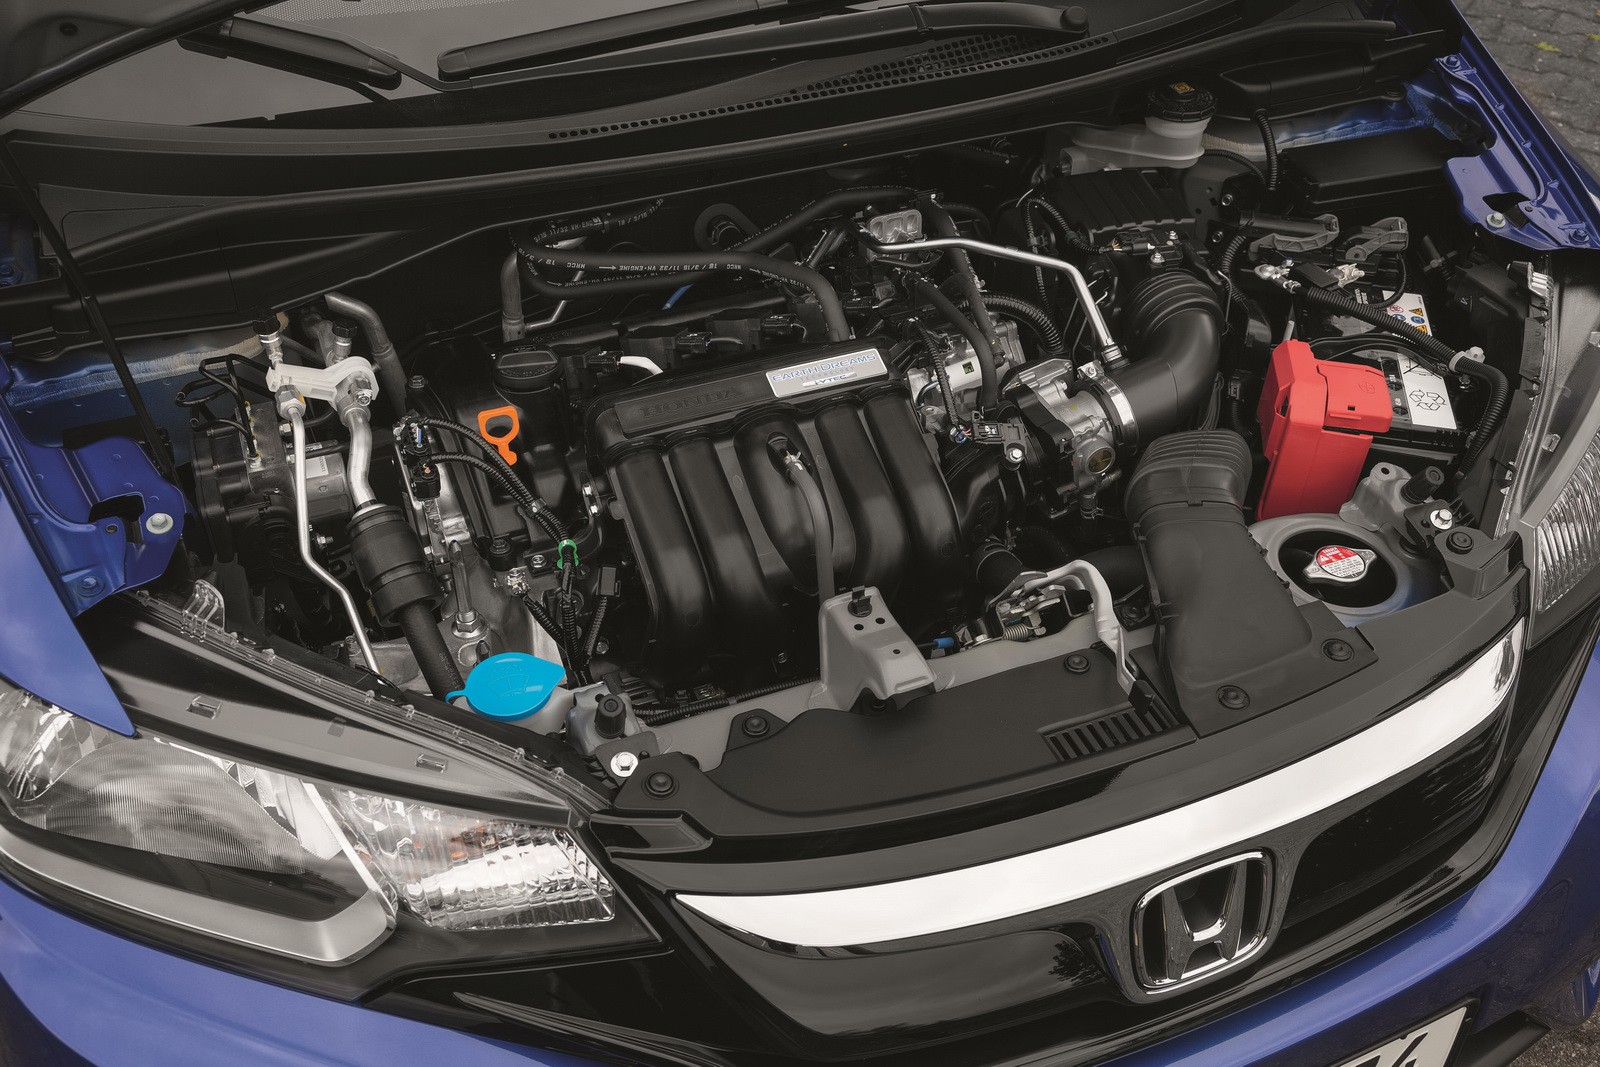 2015 Honda Jazz engine for Europe